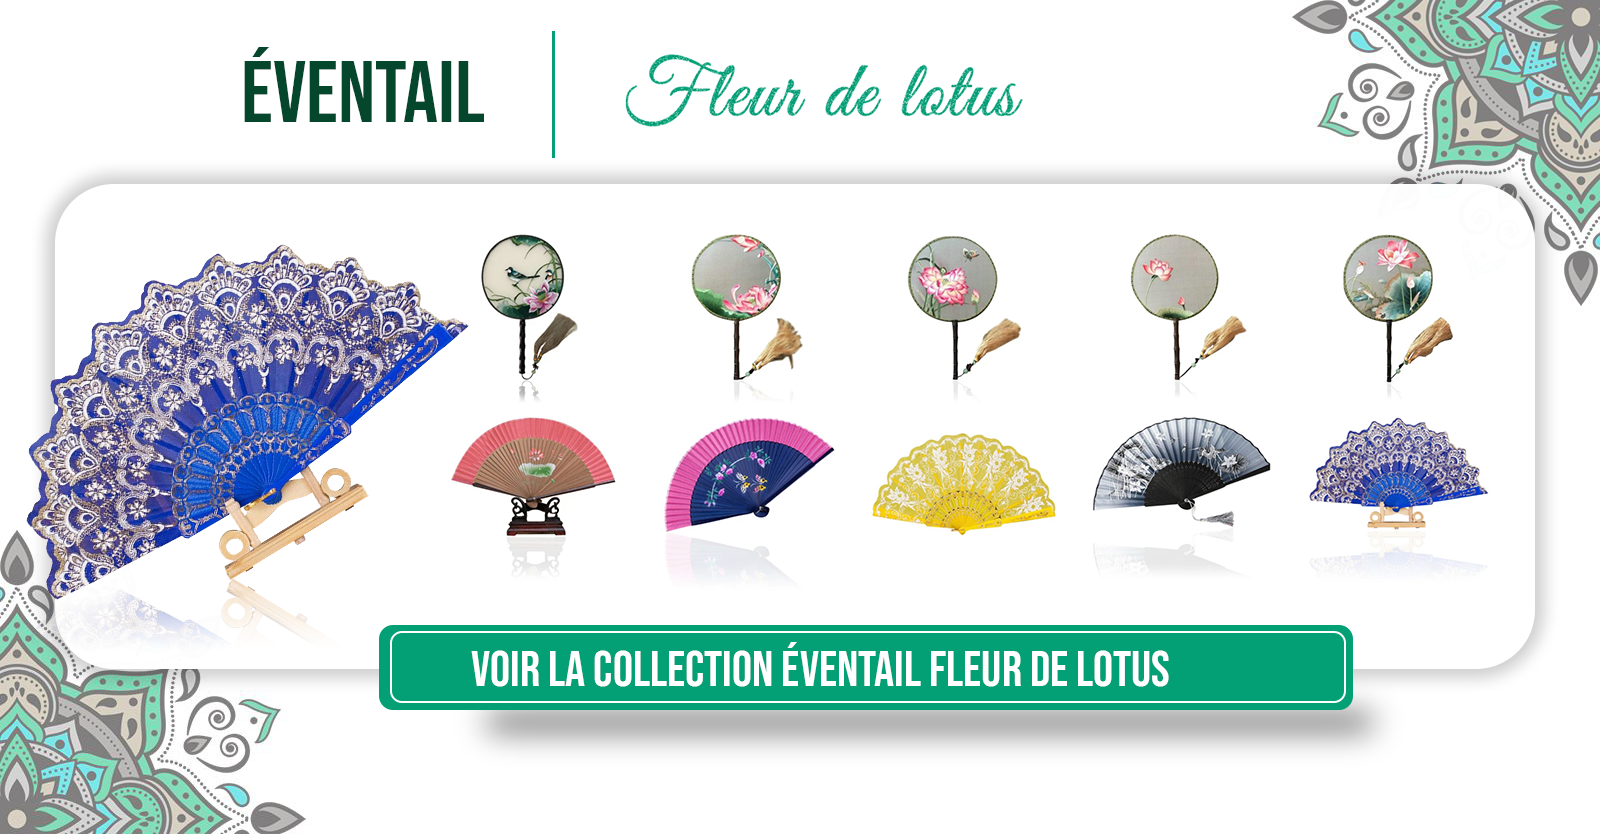 https://royal-lotus.fr/collections/eventail-fleur-de-lotus